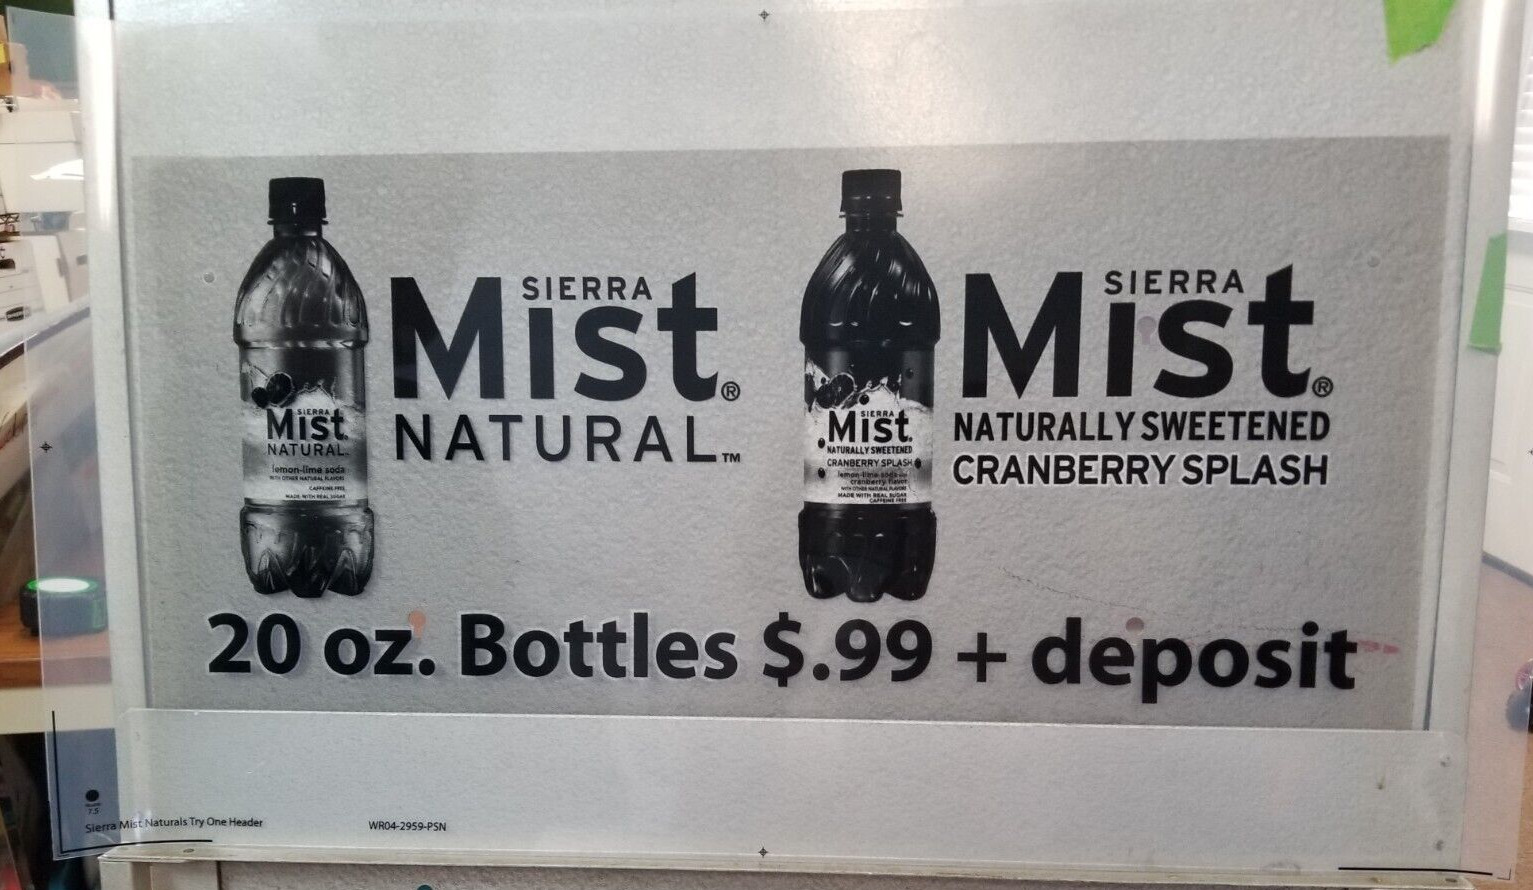 Sierra Mist Cranberry Splash Preproduction Advertising Art Work Bottles Deposit